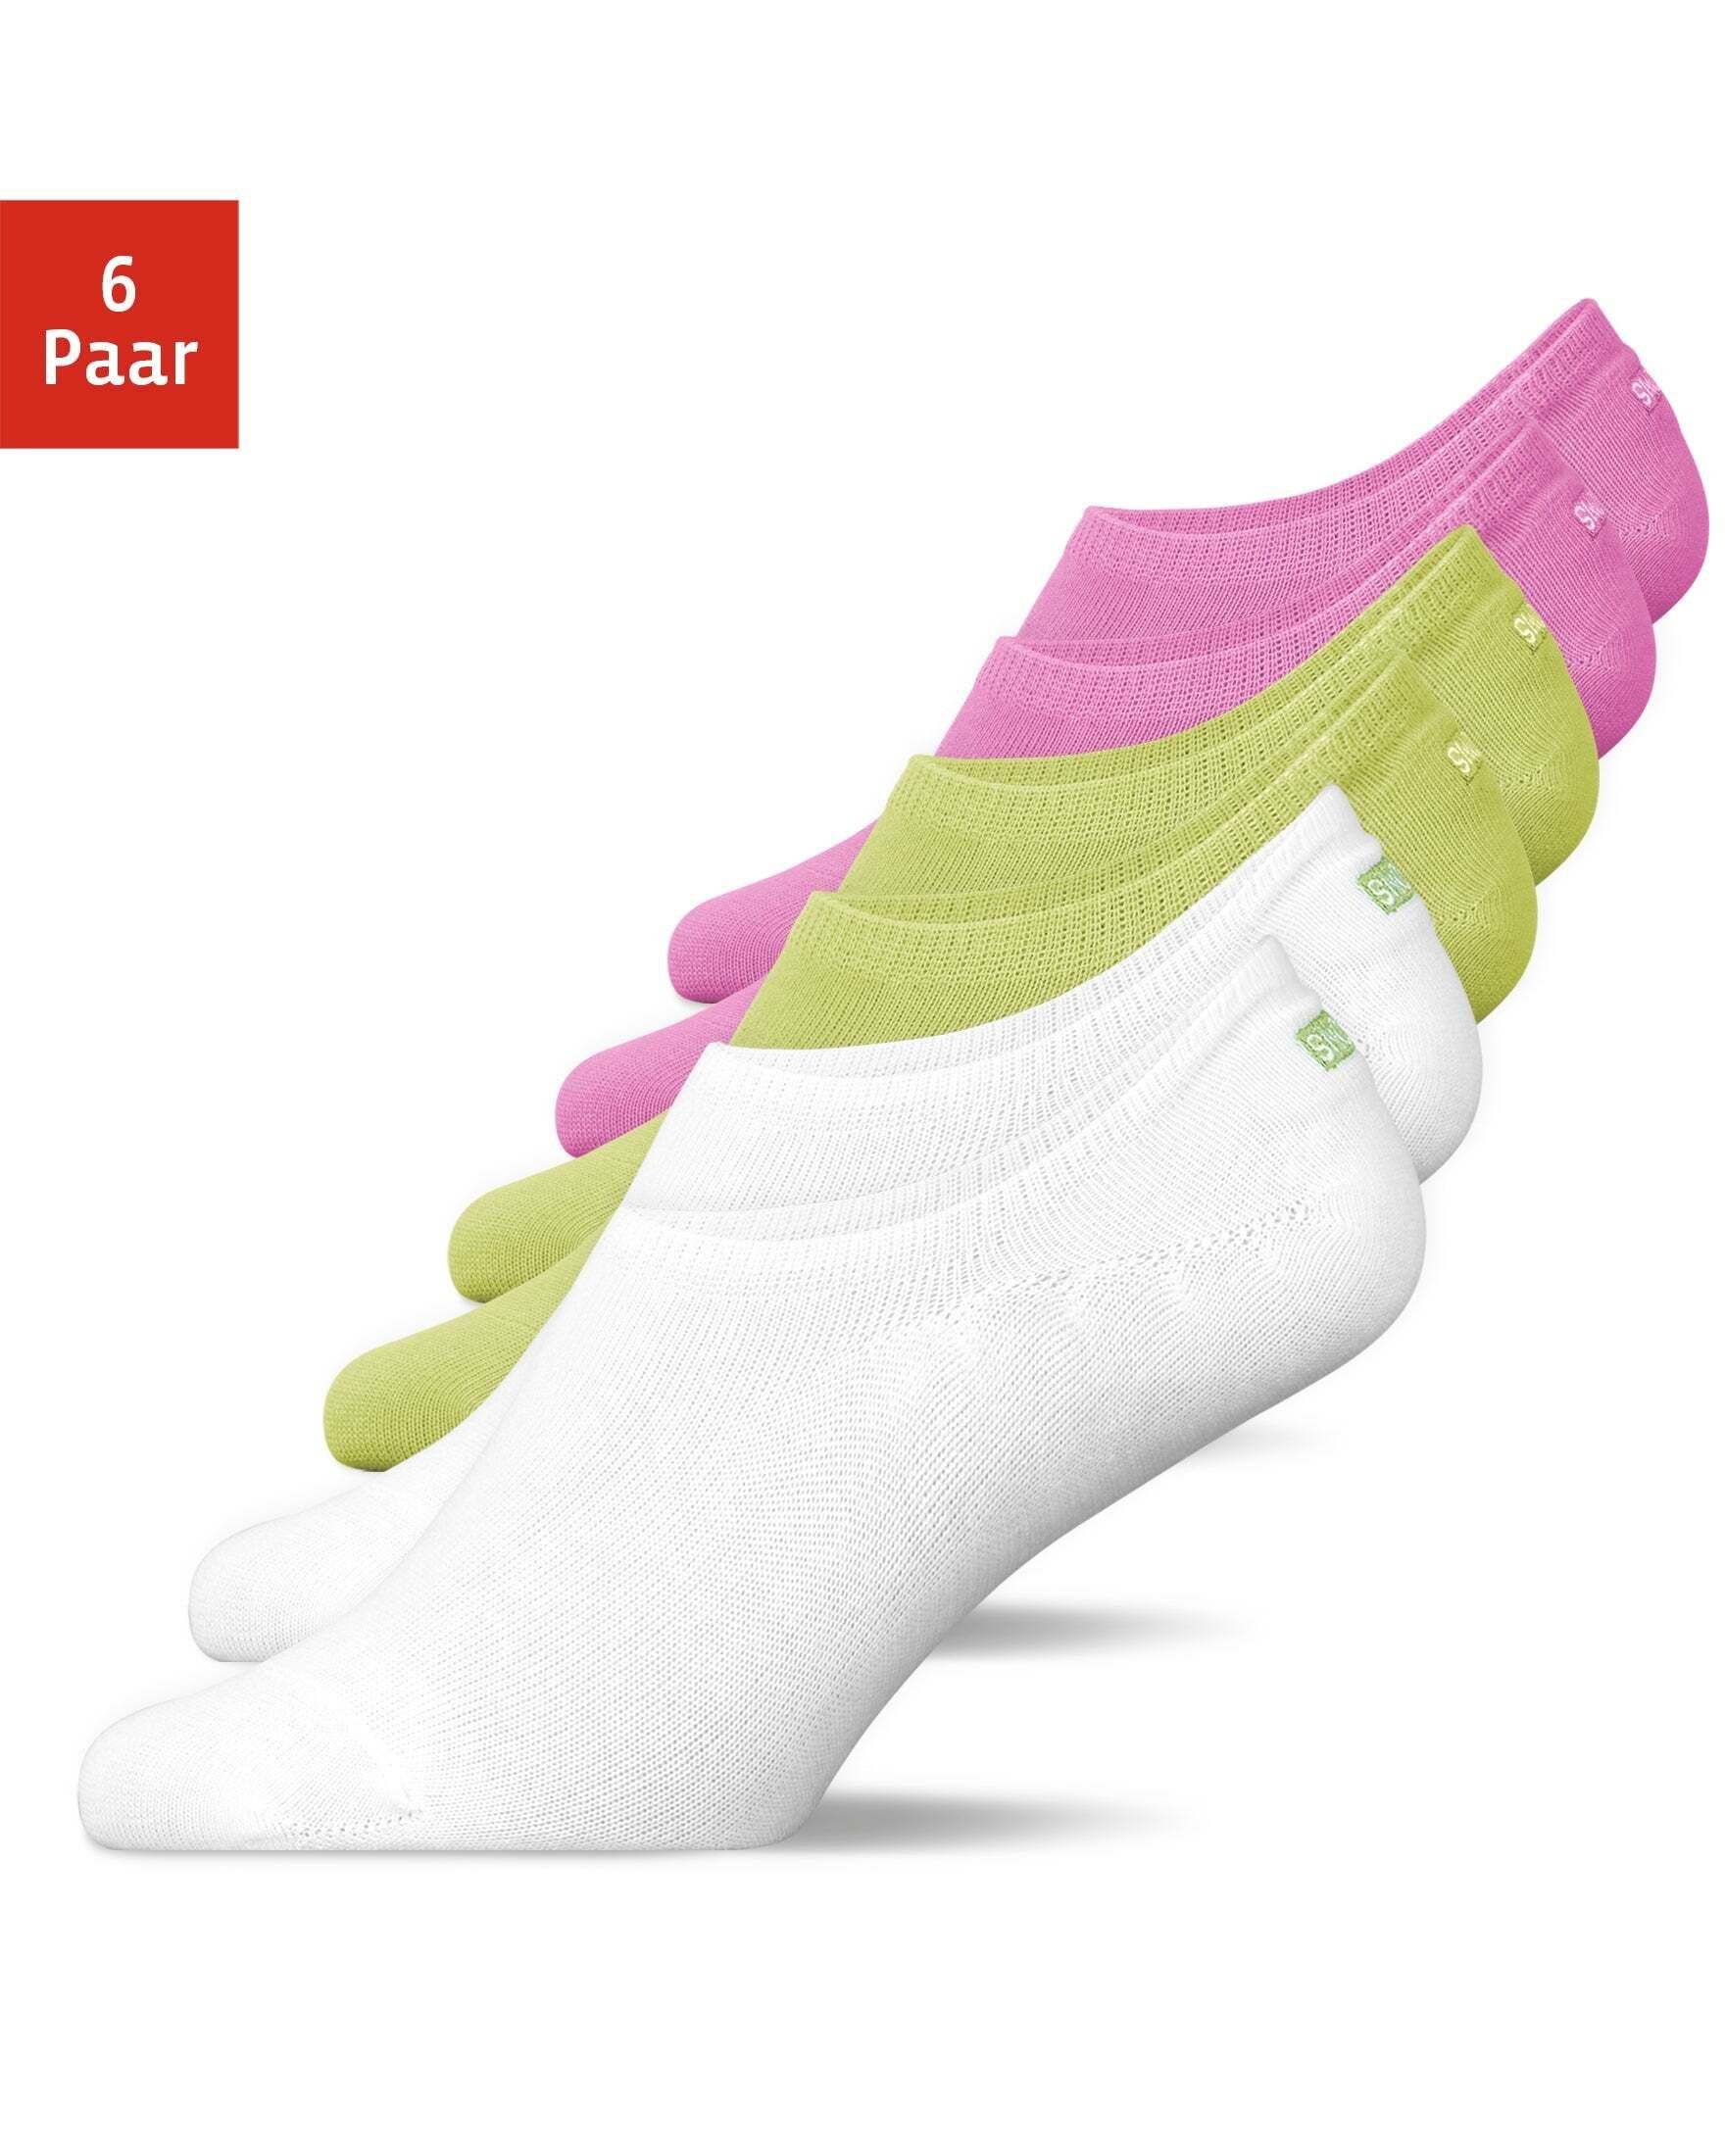 SNOCKS Füßlinge Invisible Socks Sneaker Носки Damen & Herren (6-Paar) aus Bio-Baumwolle, mit Anti-Rutsch-Pad und unsichtbar in den Schuhen